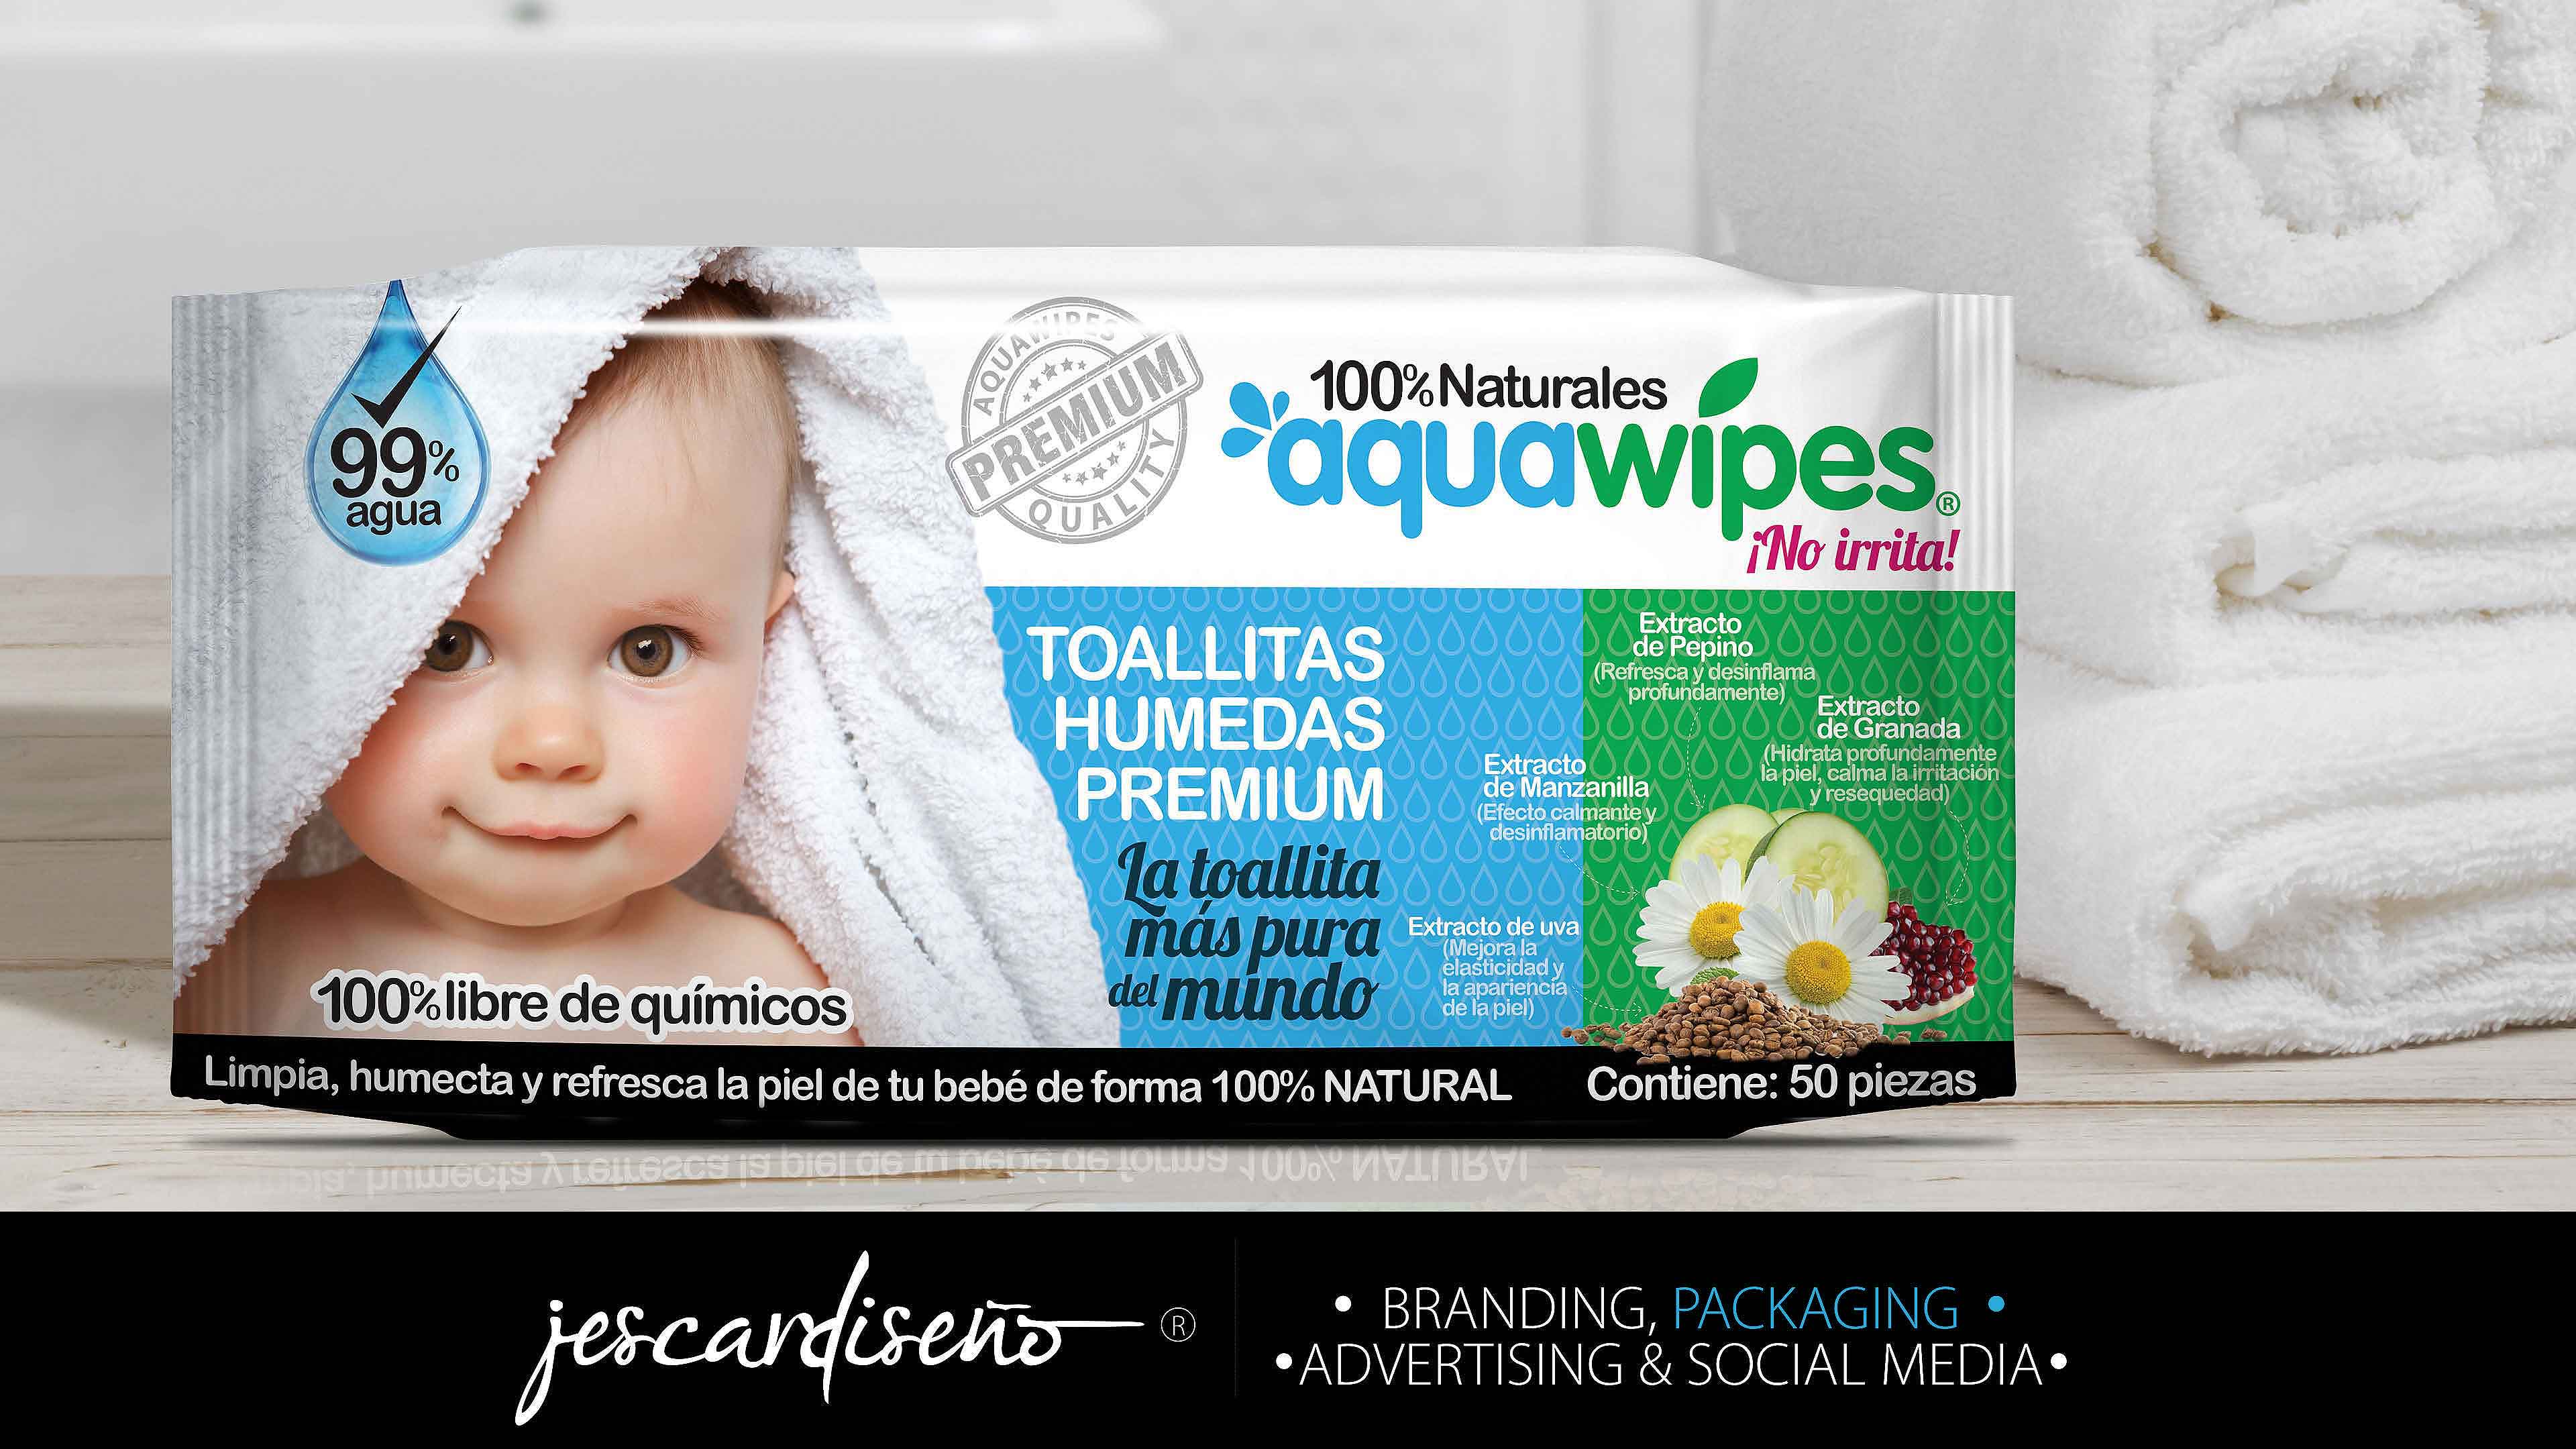 belskin aquawipes packaging branding jescardiseno